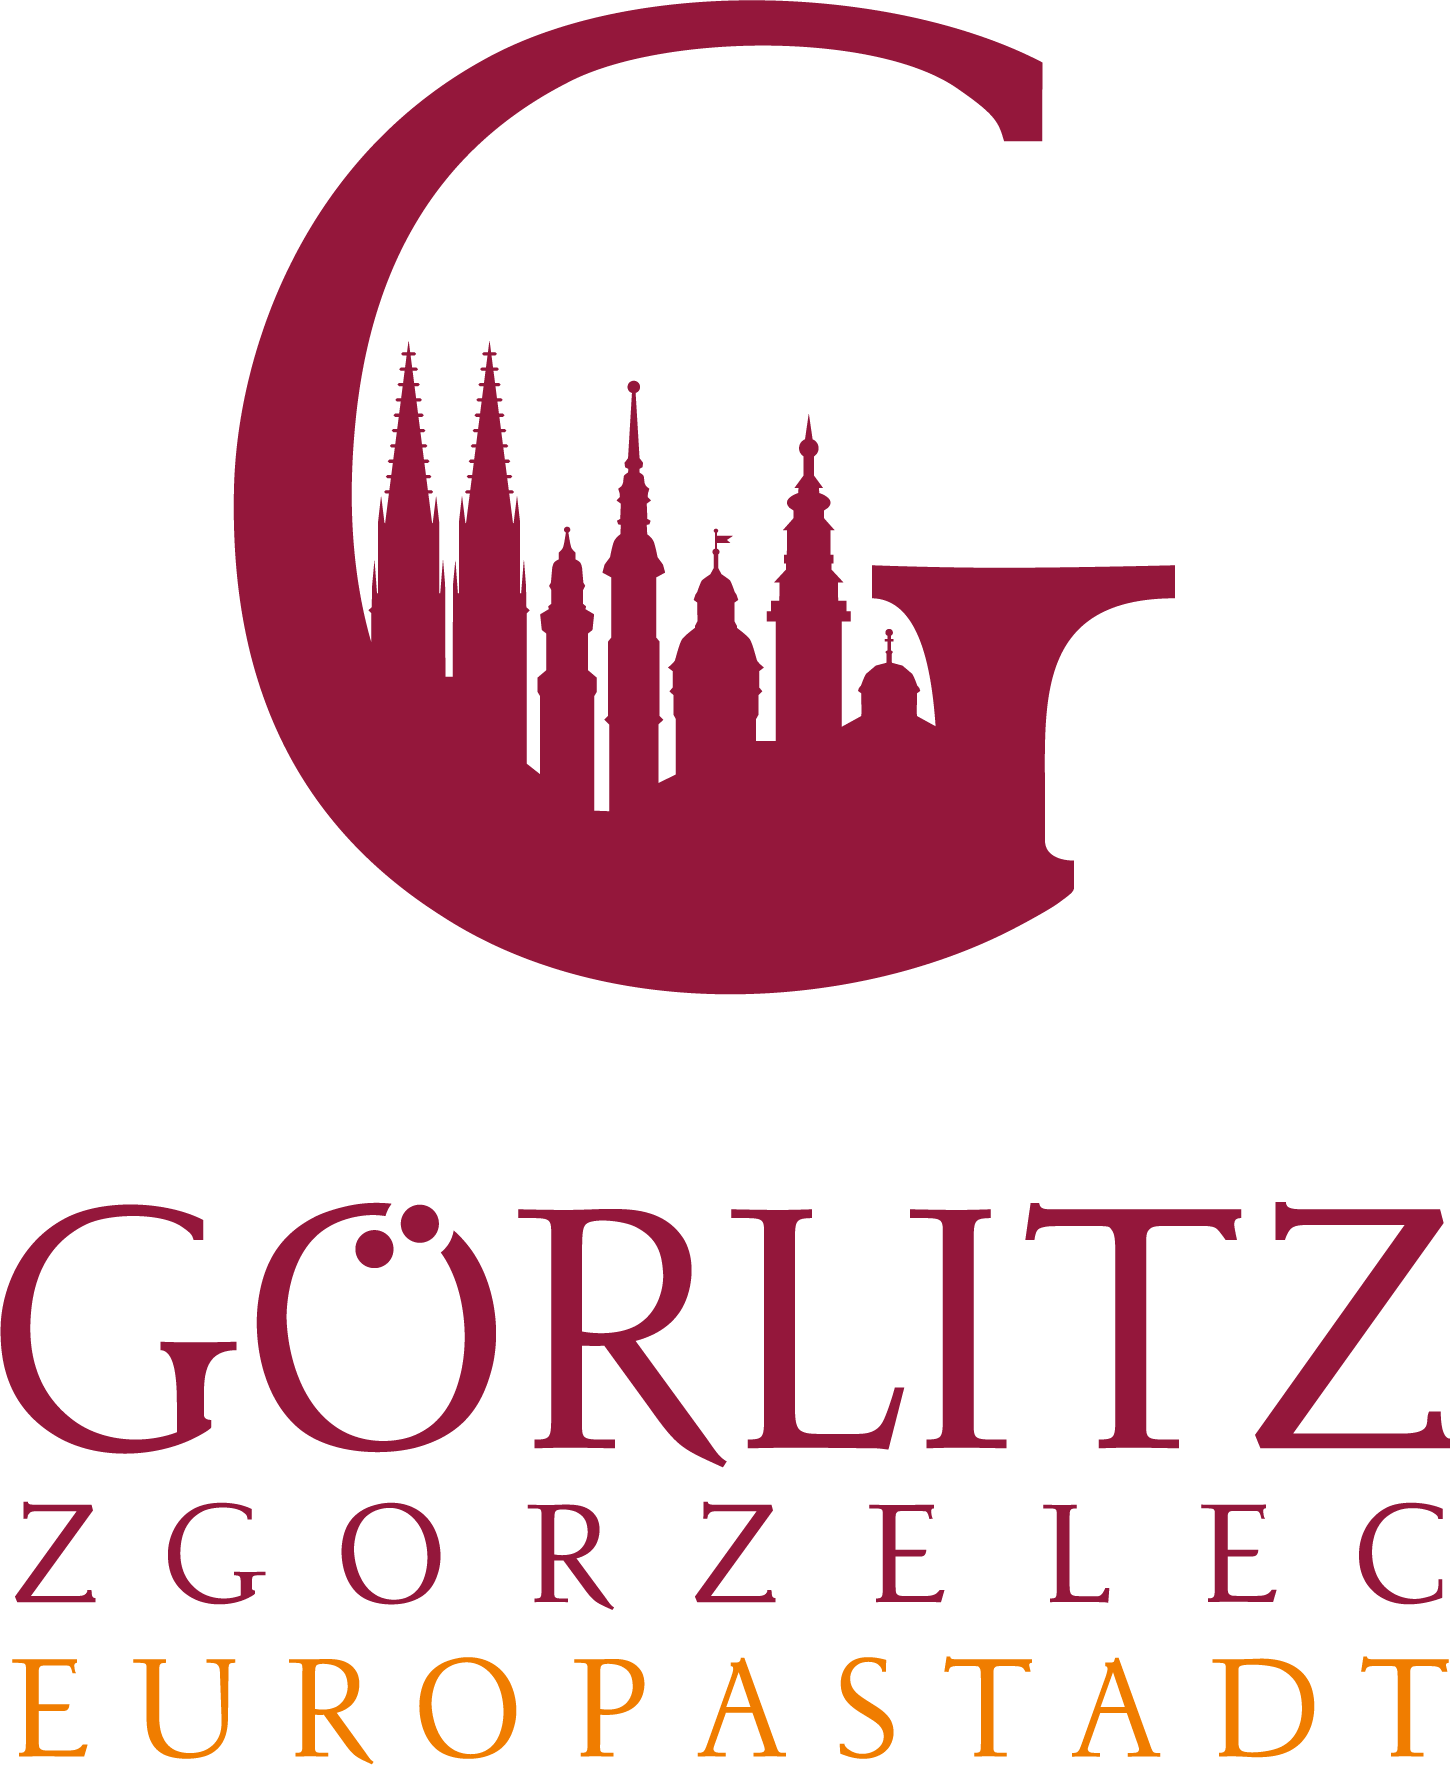 Europastadt Goerlitz